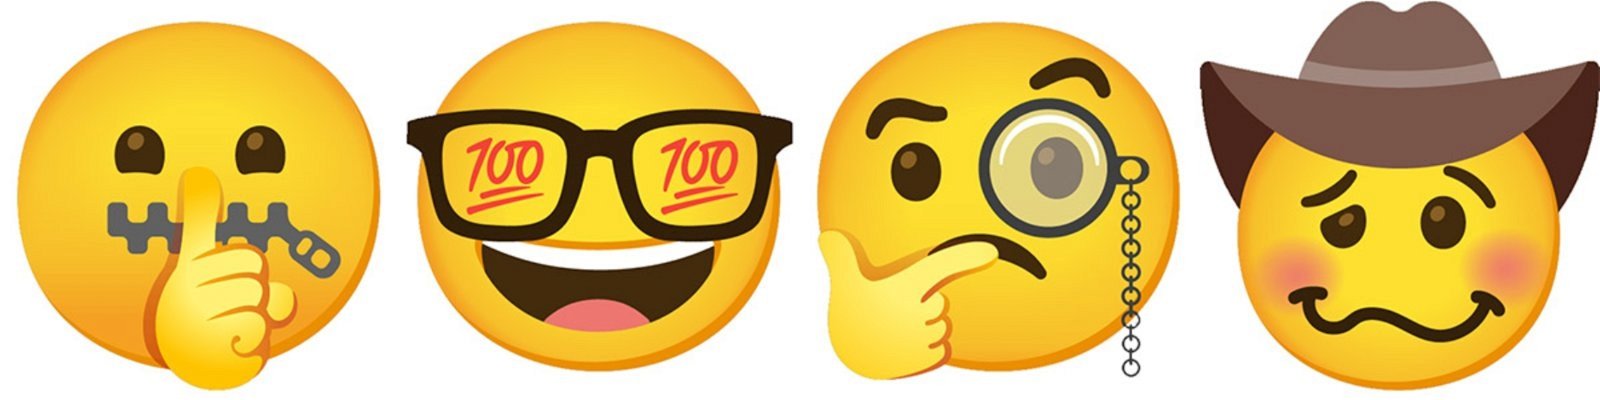 emojis combinados para obtener diferentes caras